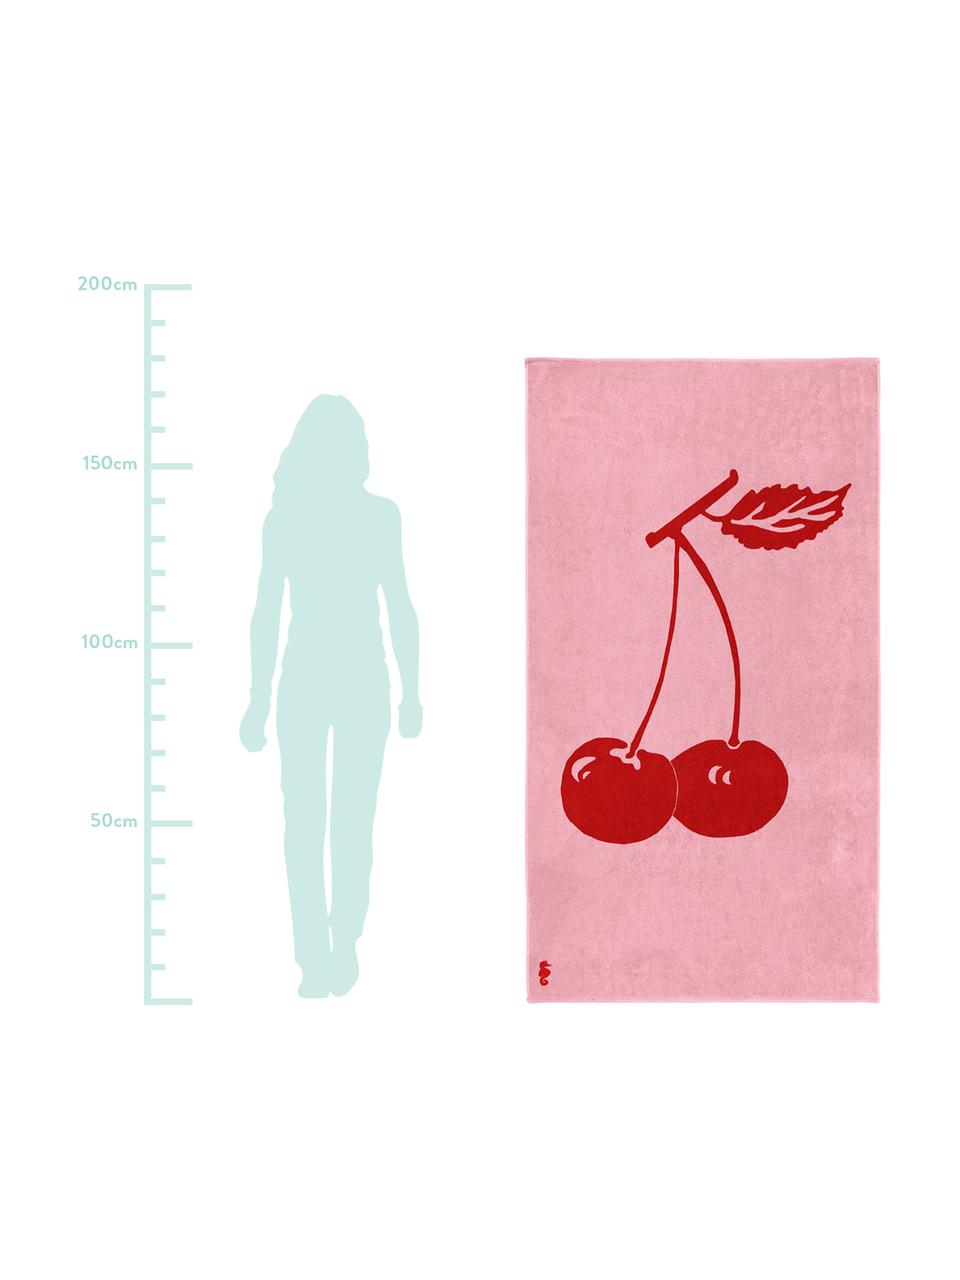 Strandlaken Cherry, Fluweel (katoen)
middelzware stofkwaliteit, 420 g/m², Roze, rood, 100 x 180 cm